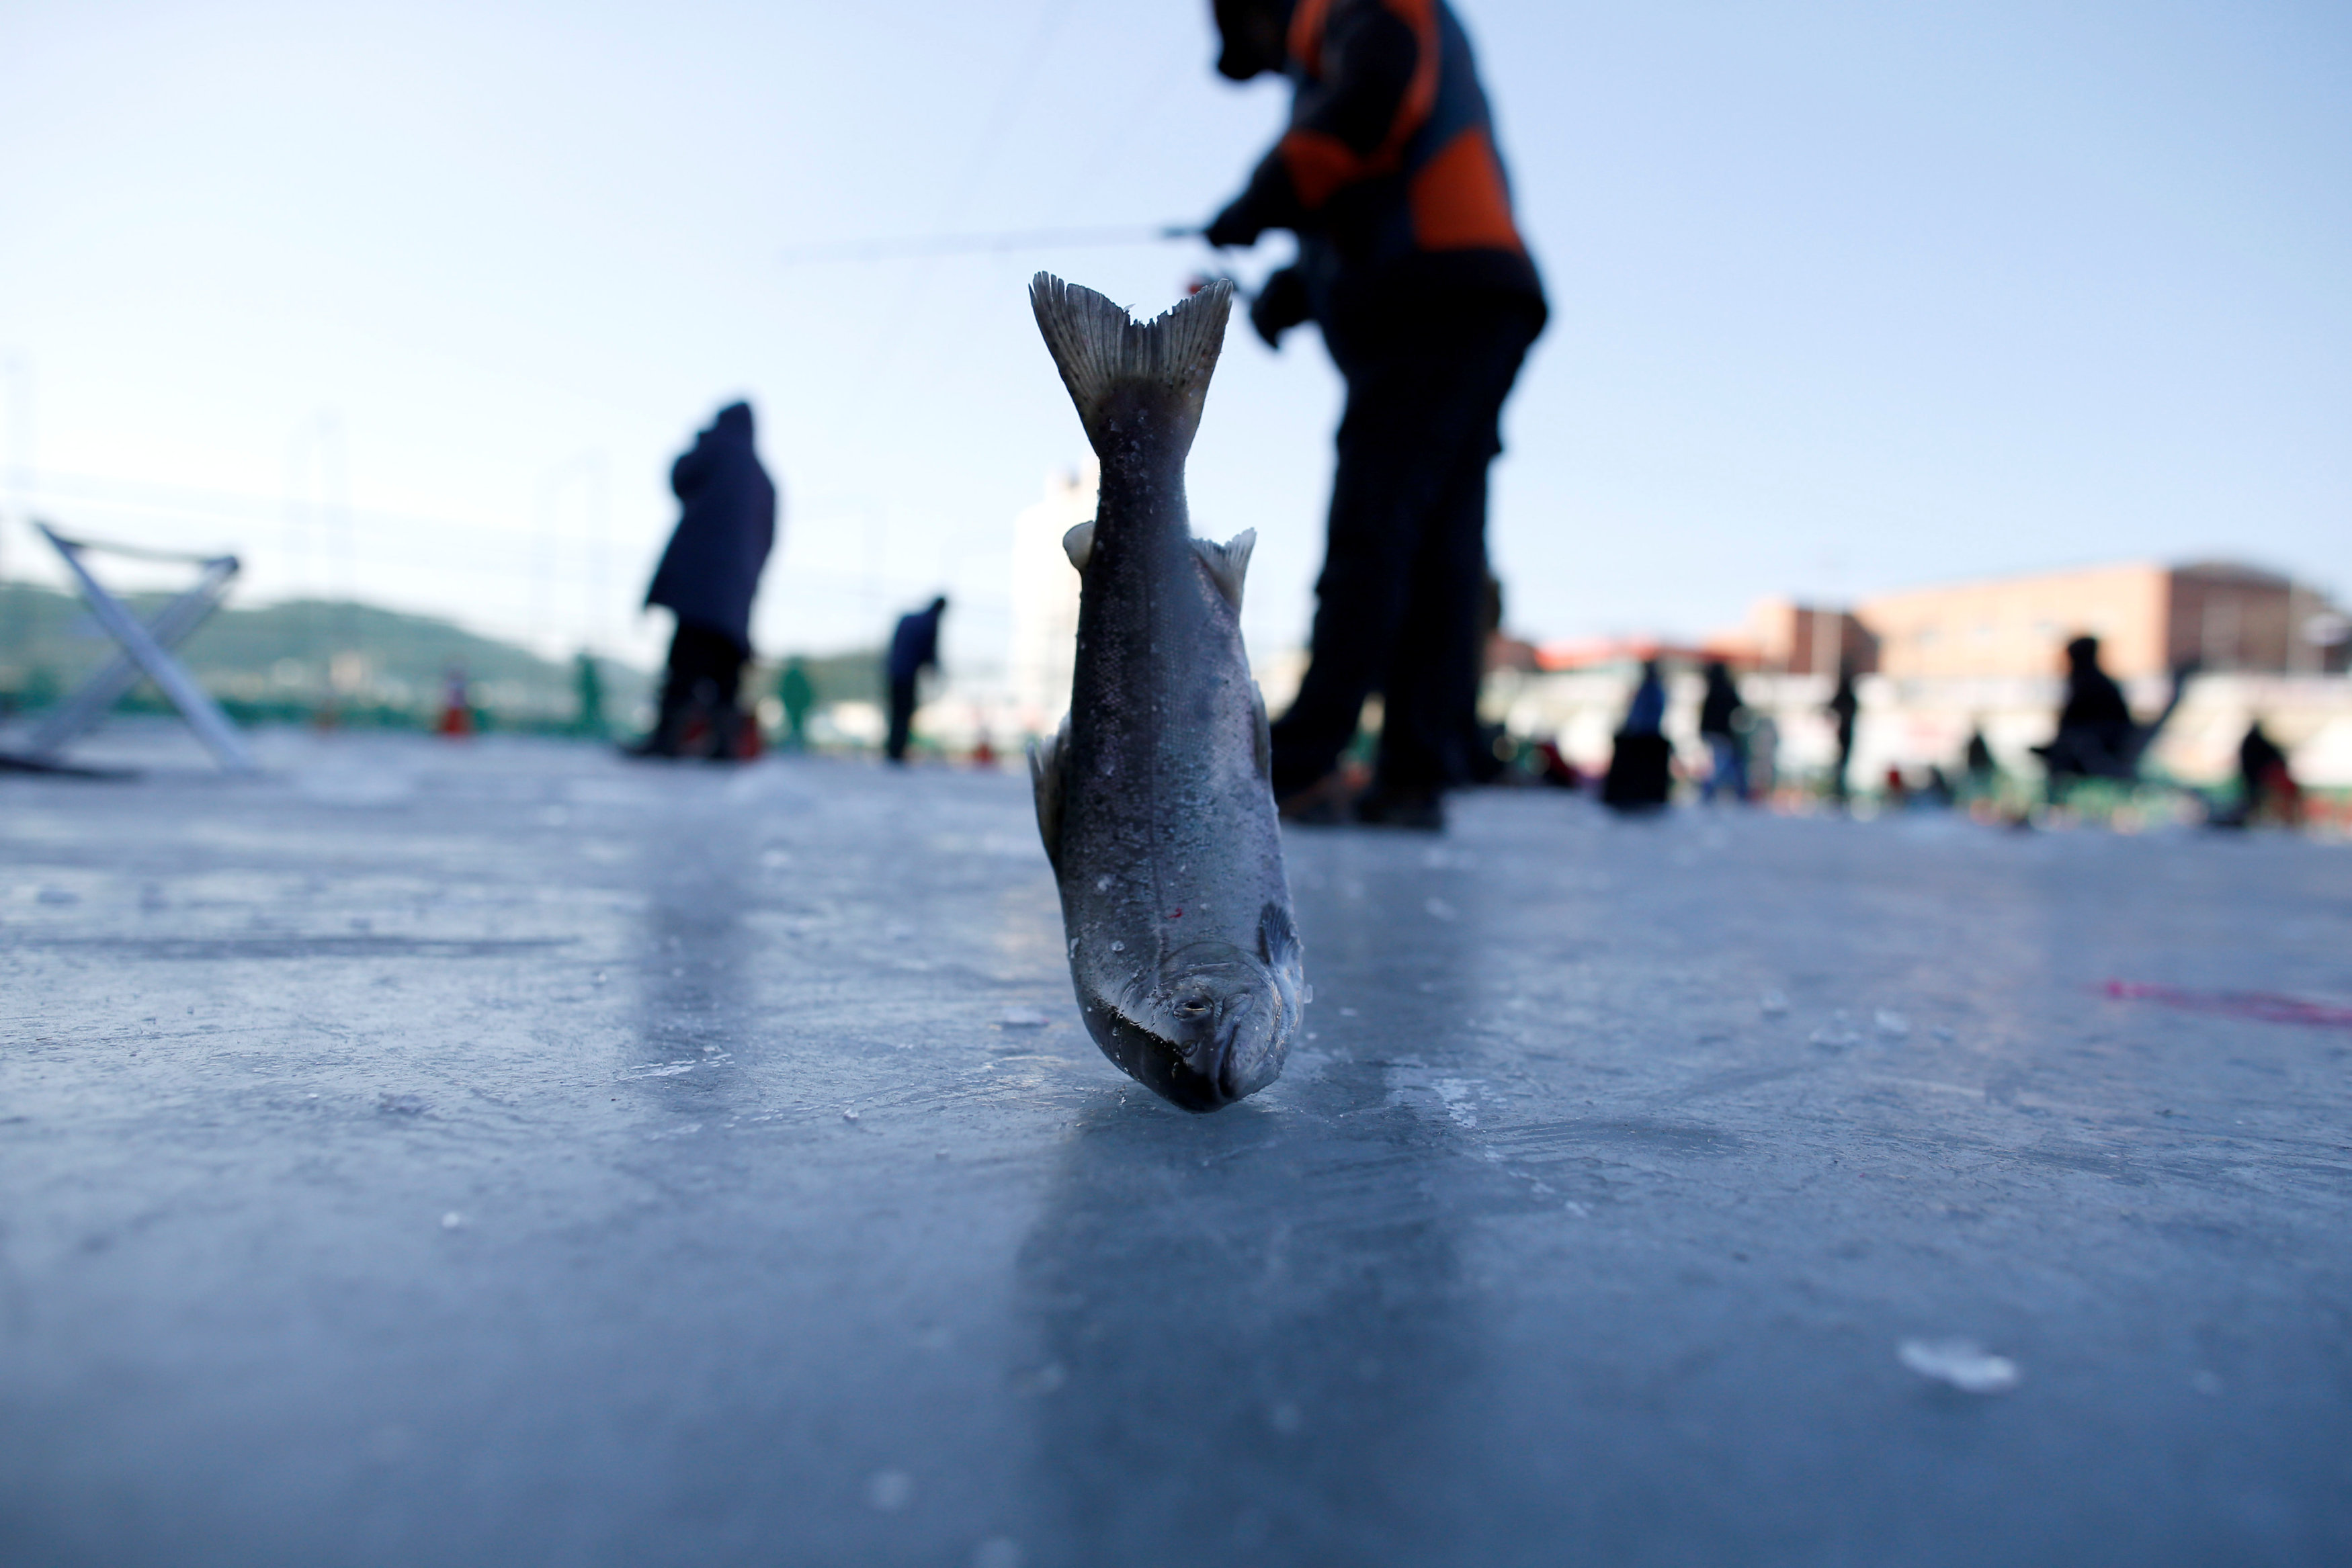 سمكة كبيرة اصطادها شاب فى مهرجان الجليد بكوريا الجنوبية